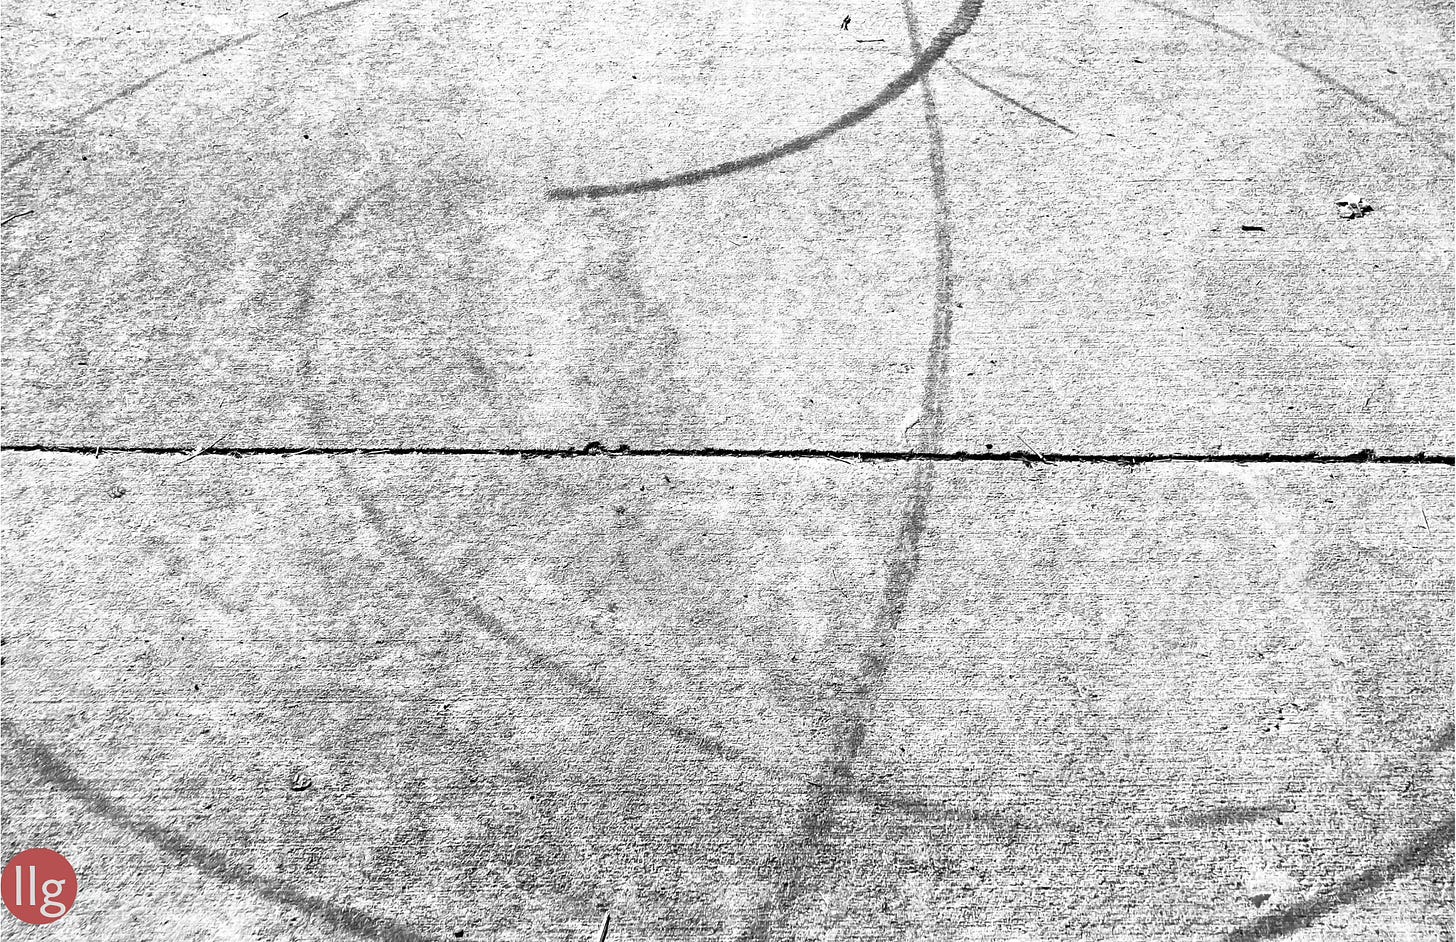 marks on a sidewalk